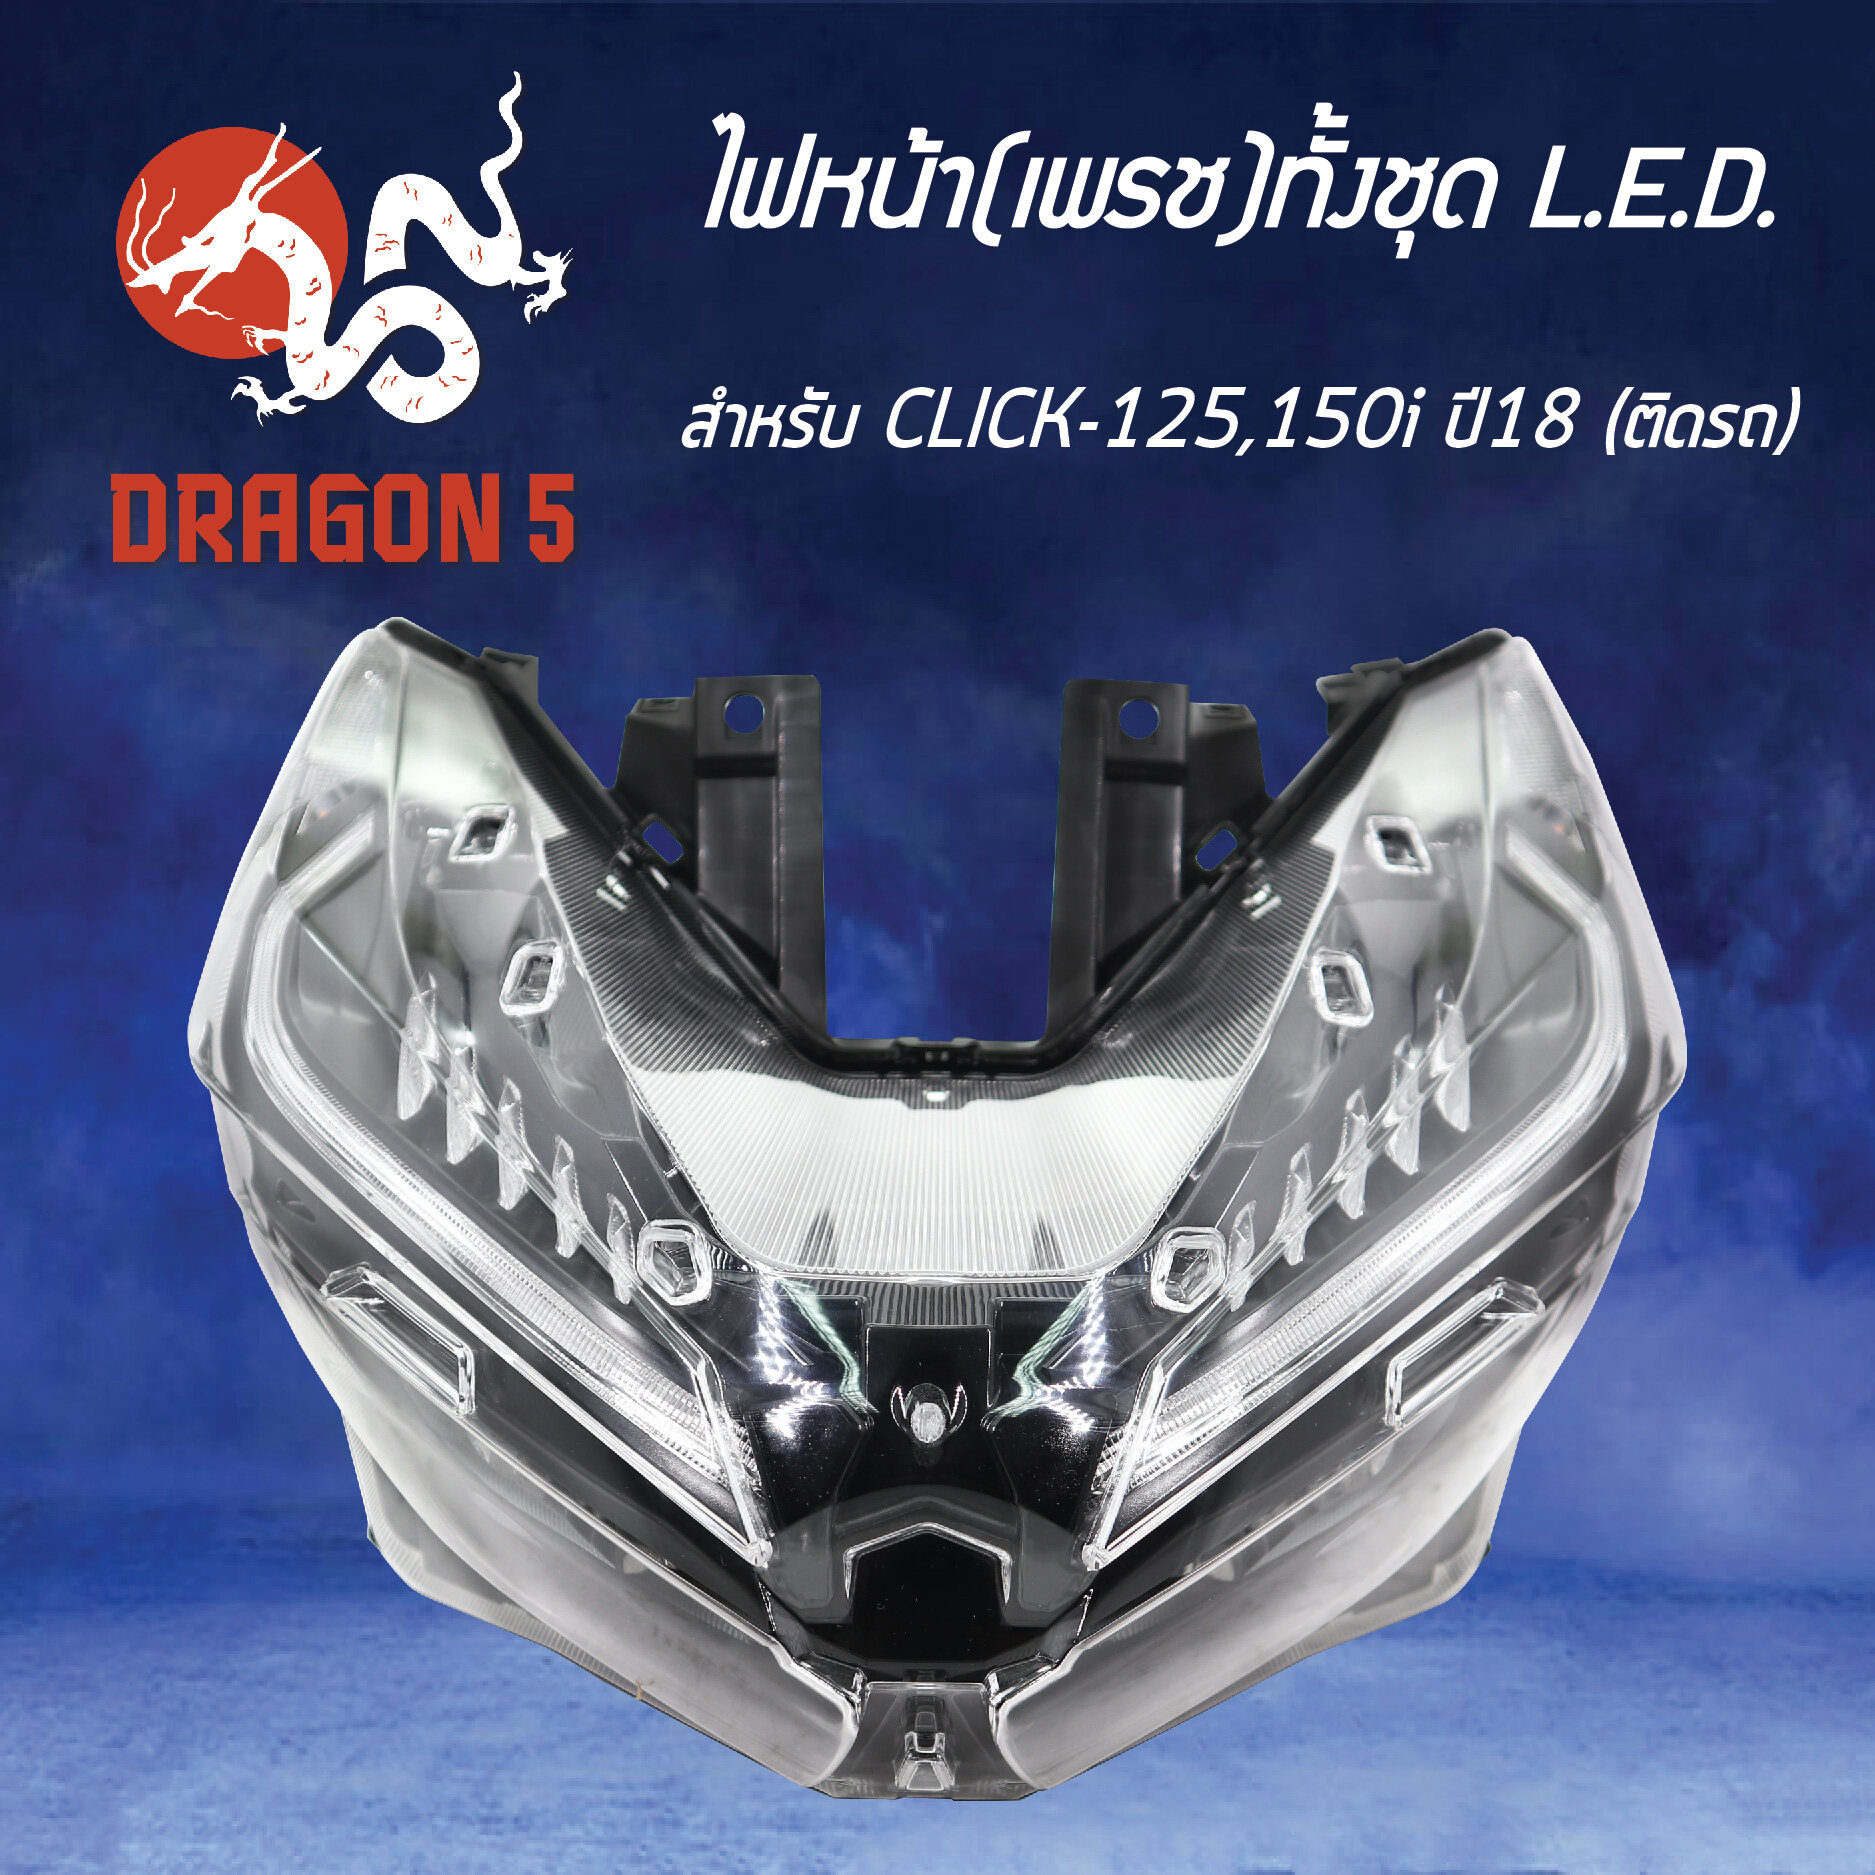 ไฟหน้า CLICK125,150I ปี18 LED, โคมไฟหน้า CLICK-125 LED, CLICK-150 LED, ไฟหน้า เพรช ทั้งชุด LED (ติดรถ) CLICK-125,150I ปี18 2007-100-00 HMA